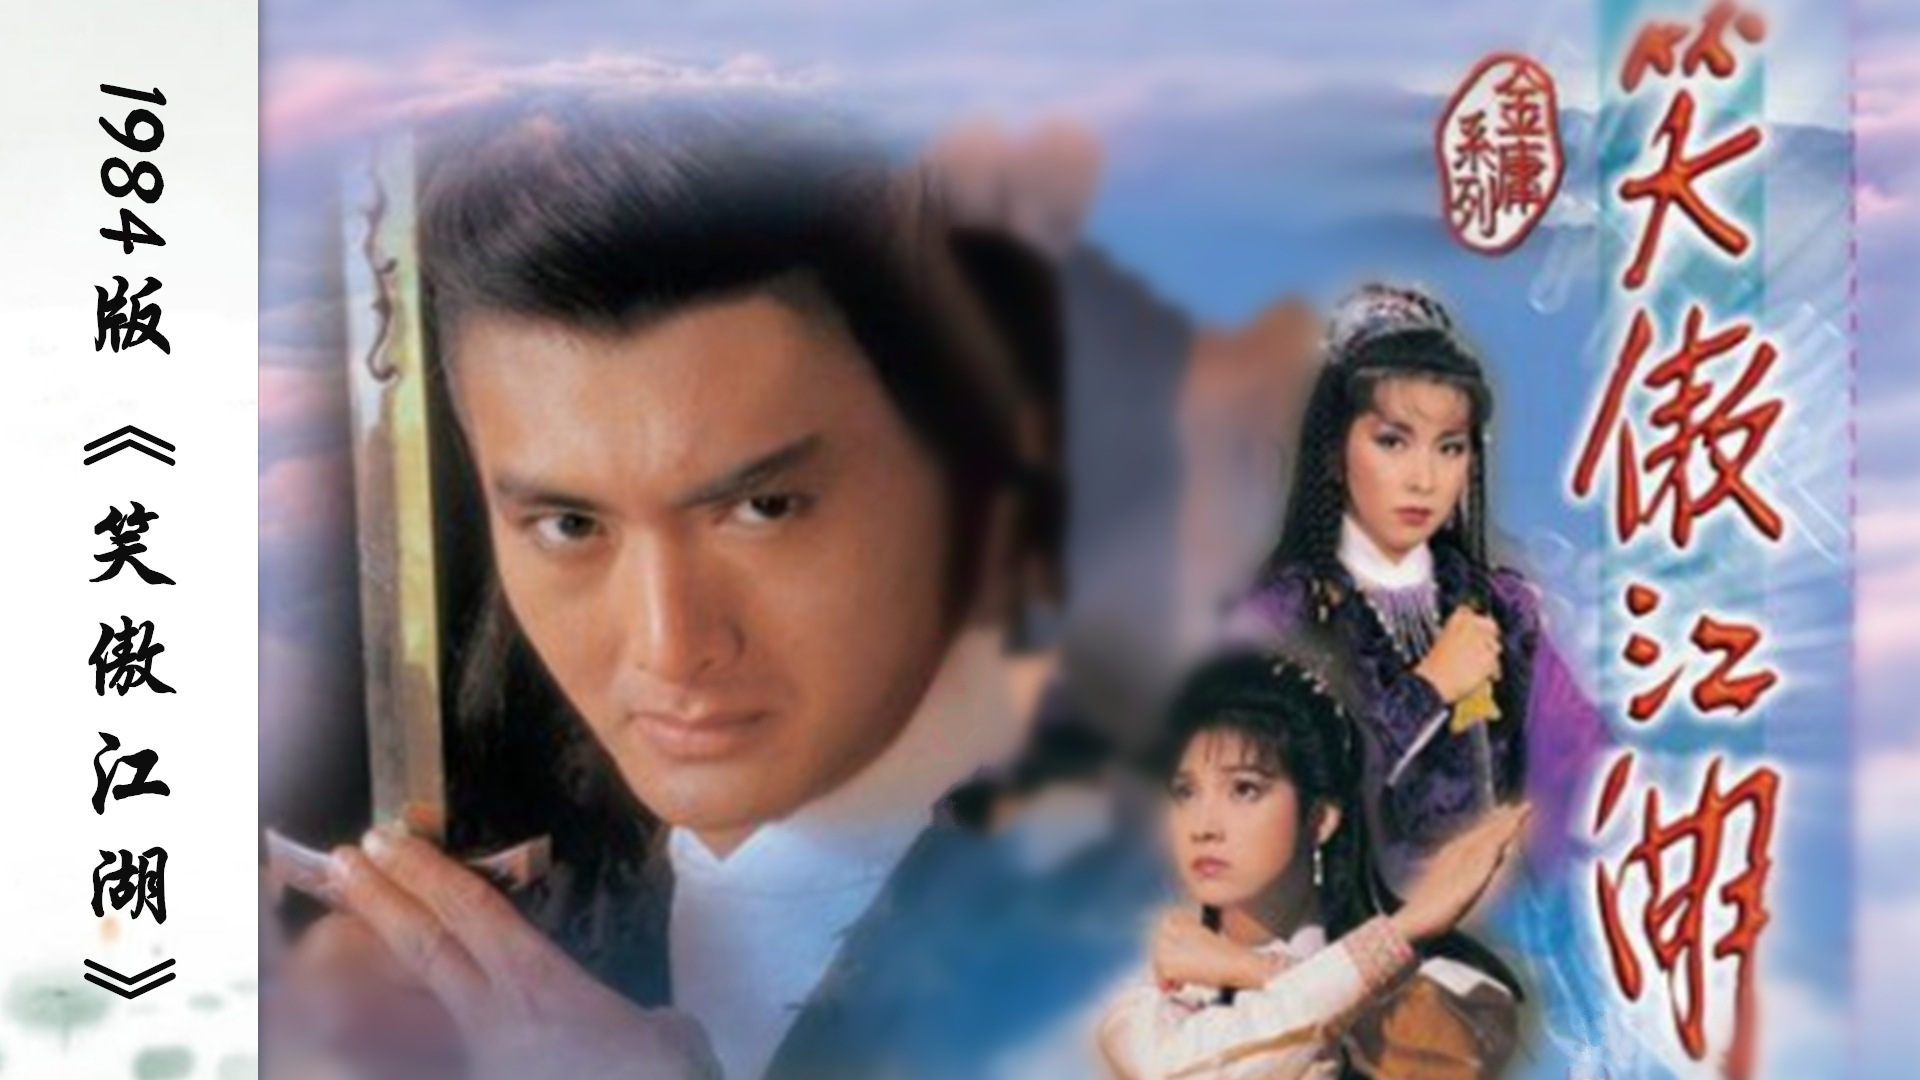 1984年周润发版《笑傲江湖》,该剧也就是中国电视剧史上的第一部